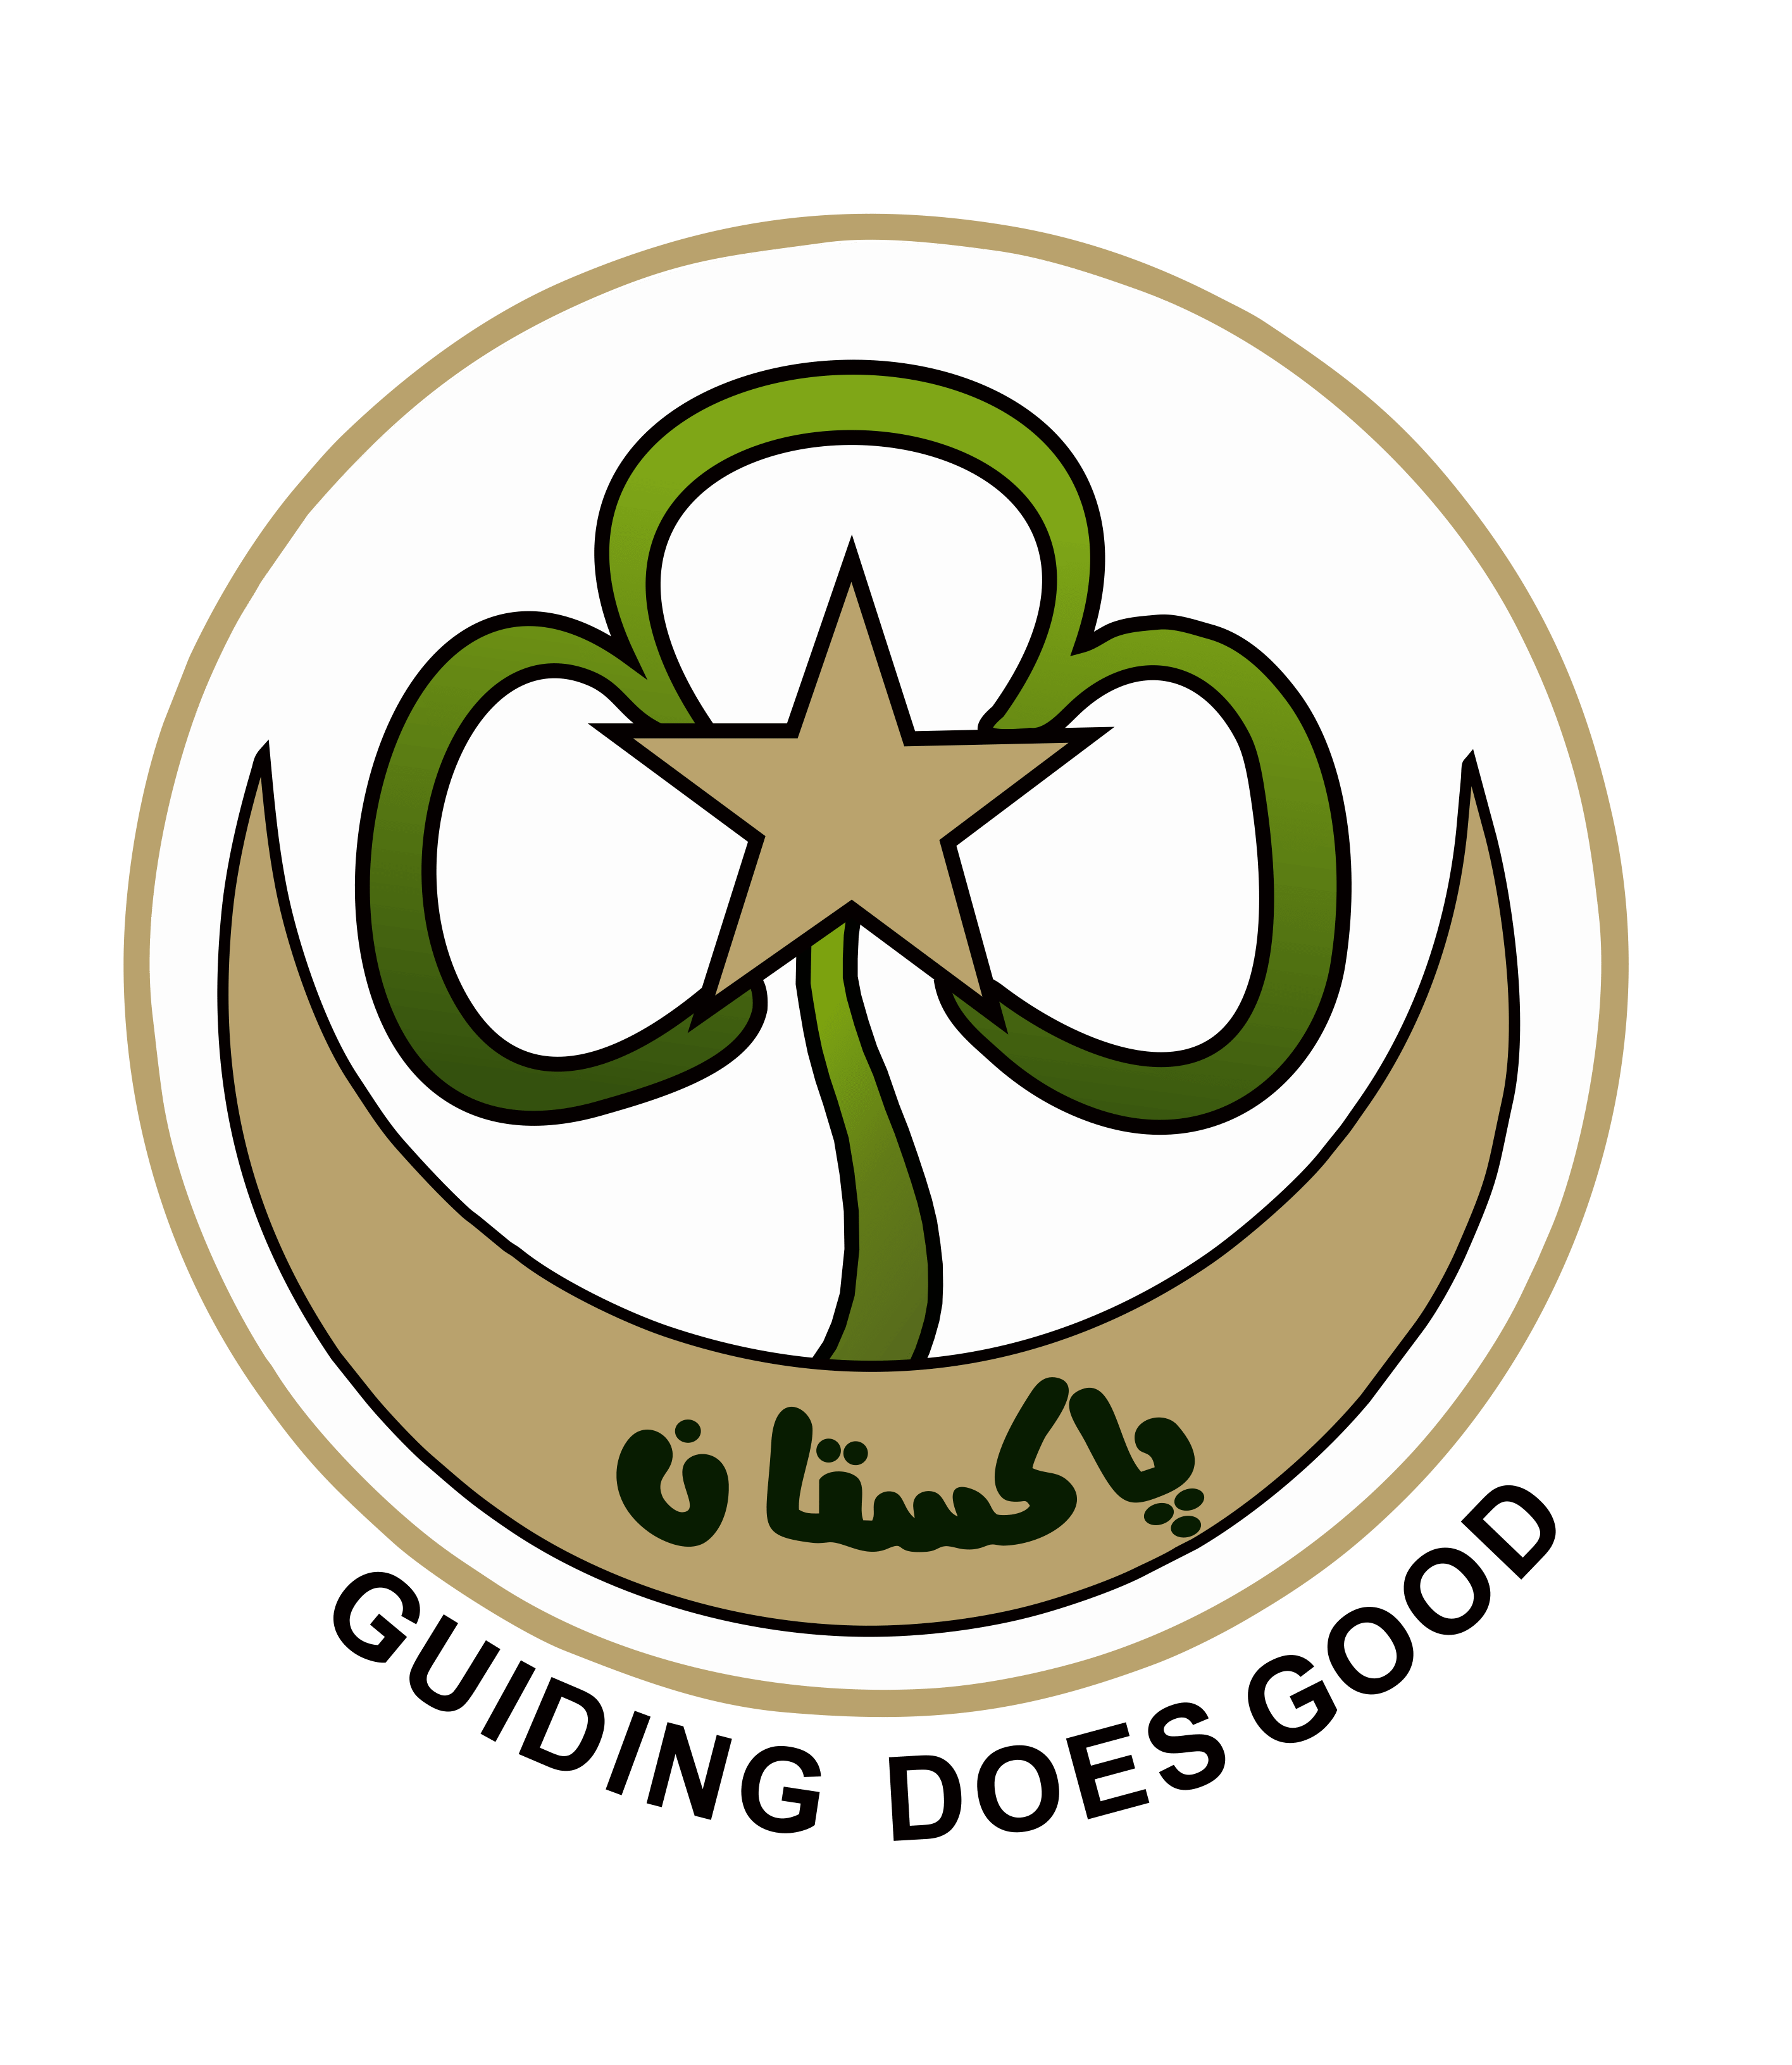 Guides company. Пакистан ассоциации. Логотип Surgicon, Пакистан. Association of Guides. Girl Guides Association logo.